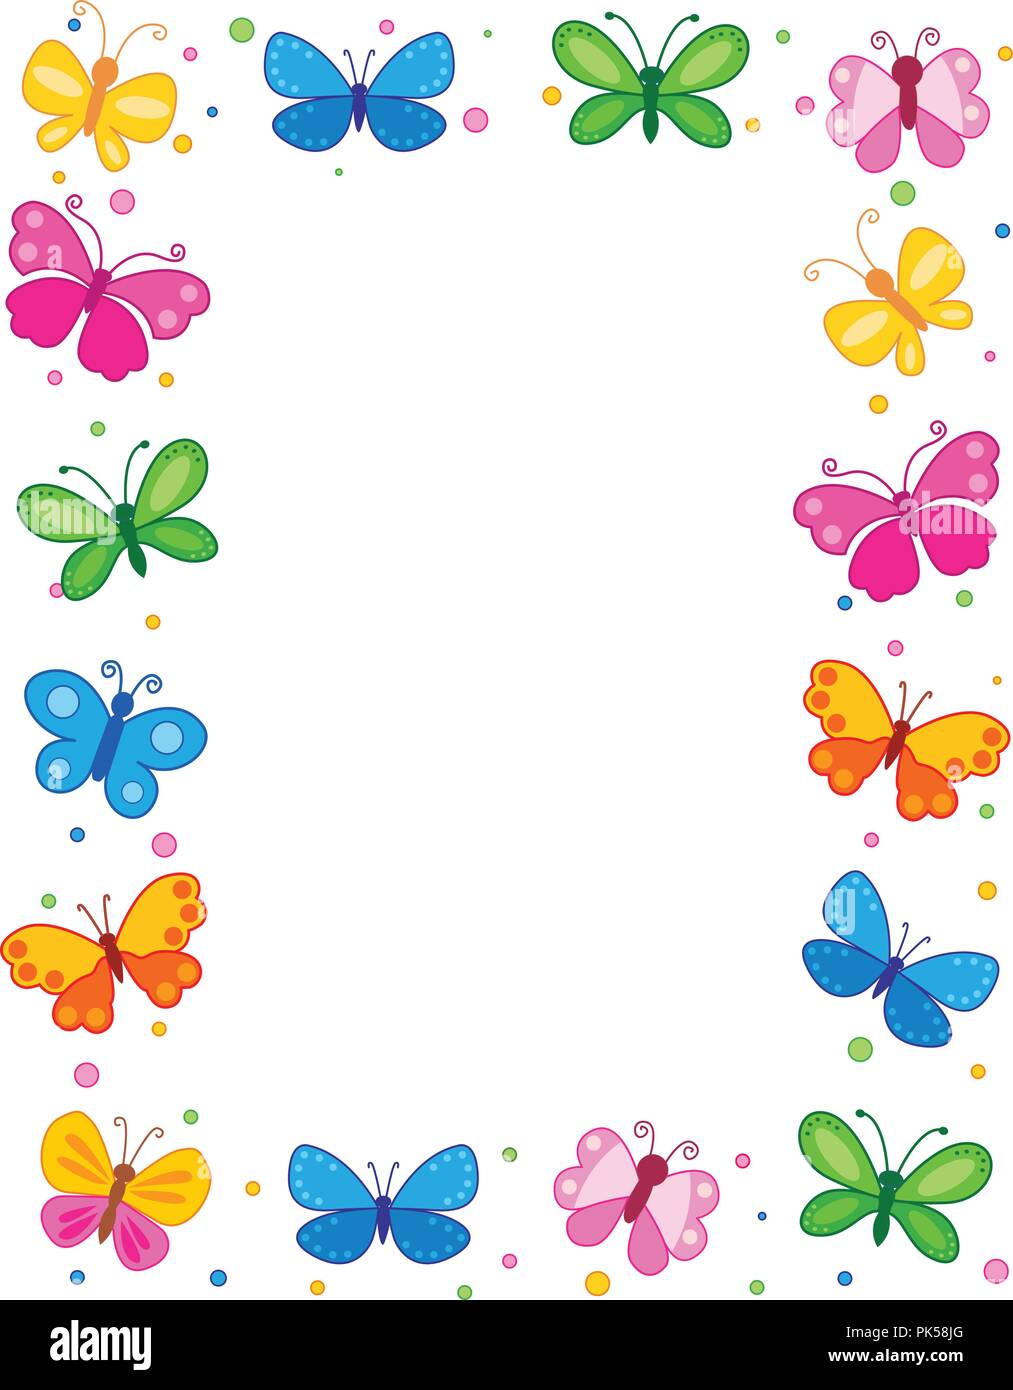 Nếu bạn muốn tìm kiếm một khung hoa bướm đầy màu sắc để tô điểm cho tấm ảnh của mình, hãy đến xem ảnh này. Chắc chắn bạn sẽ rất hài lòng với lựa chọn của mình! 